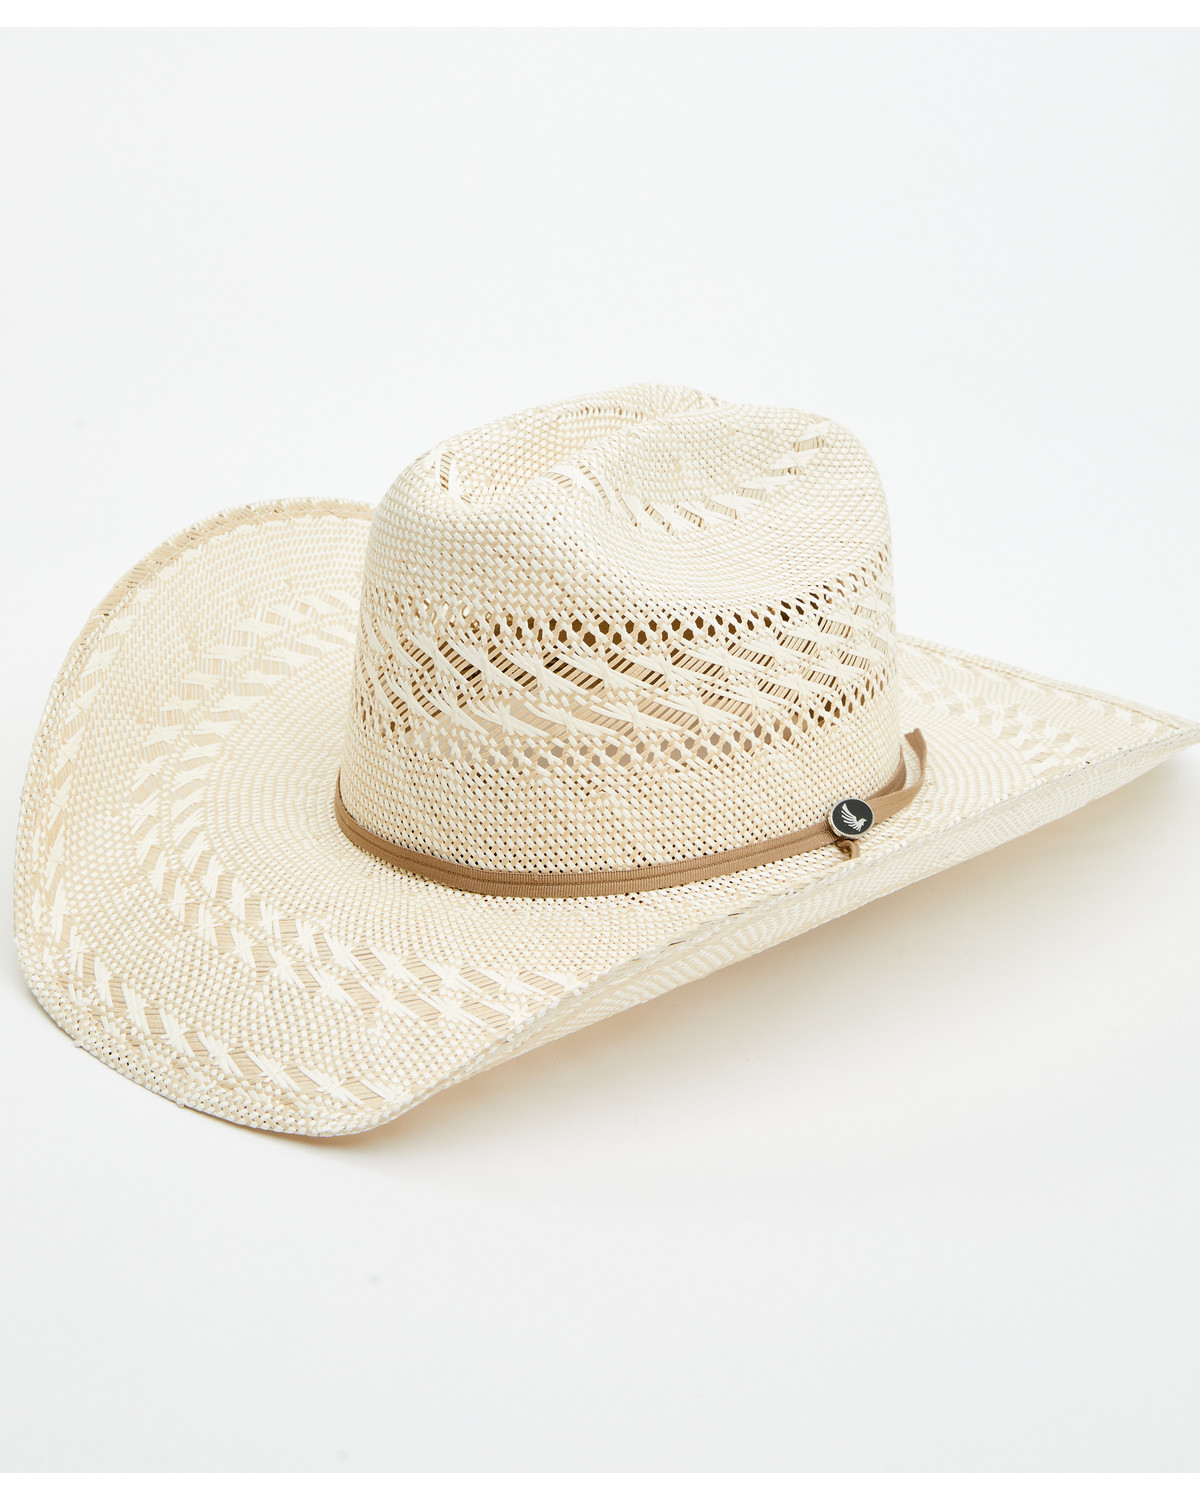 White & Natural Cowboy Hats